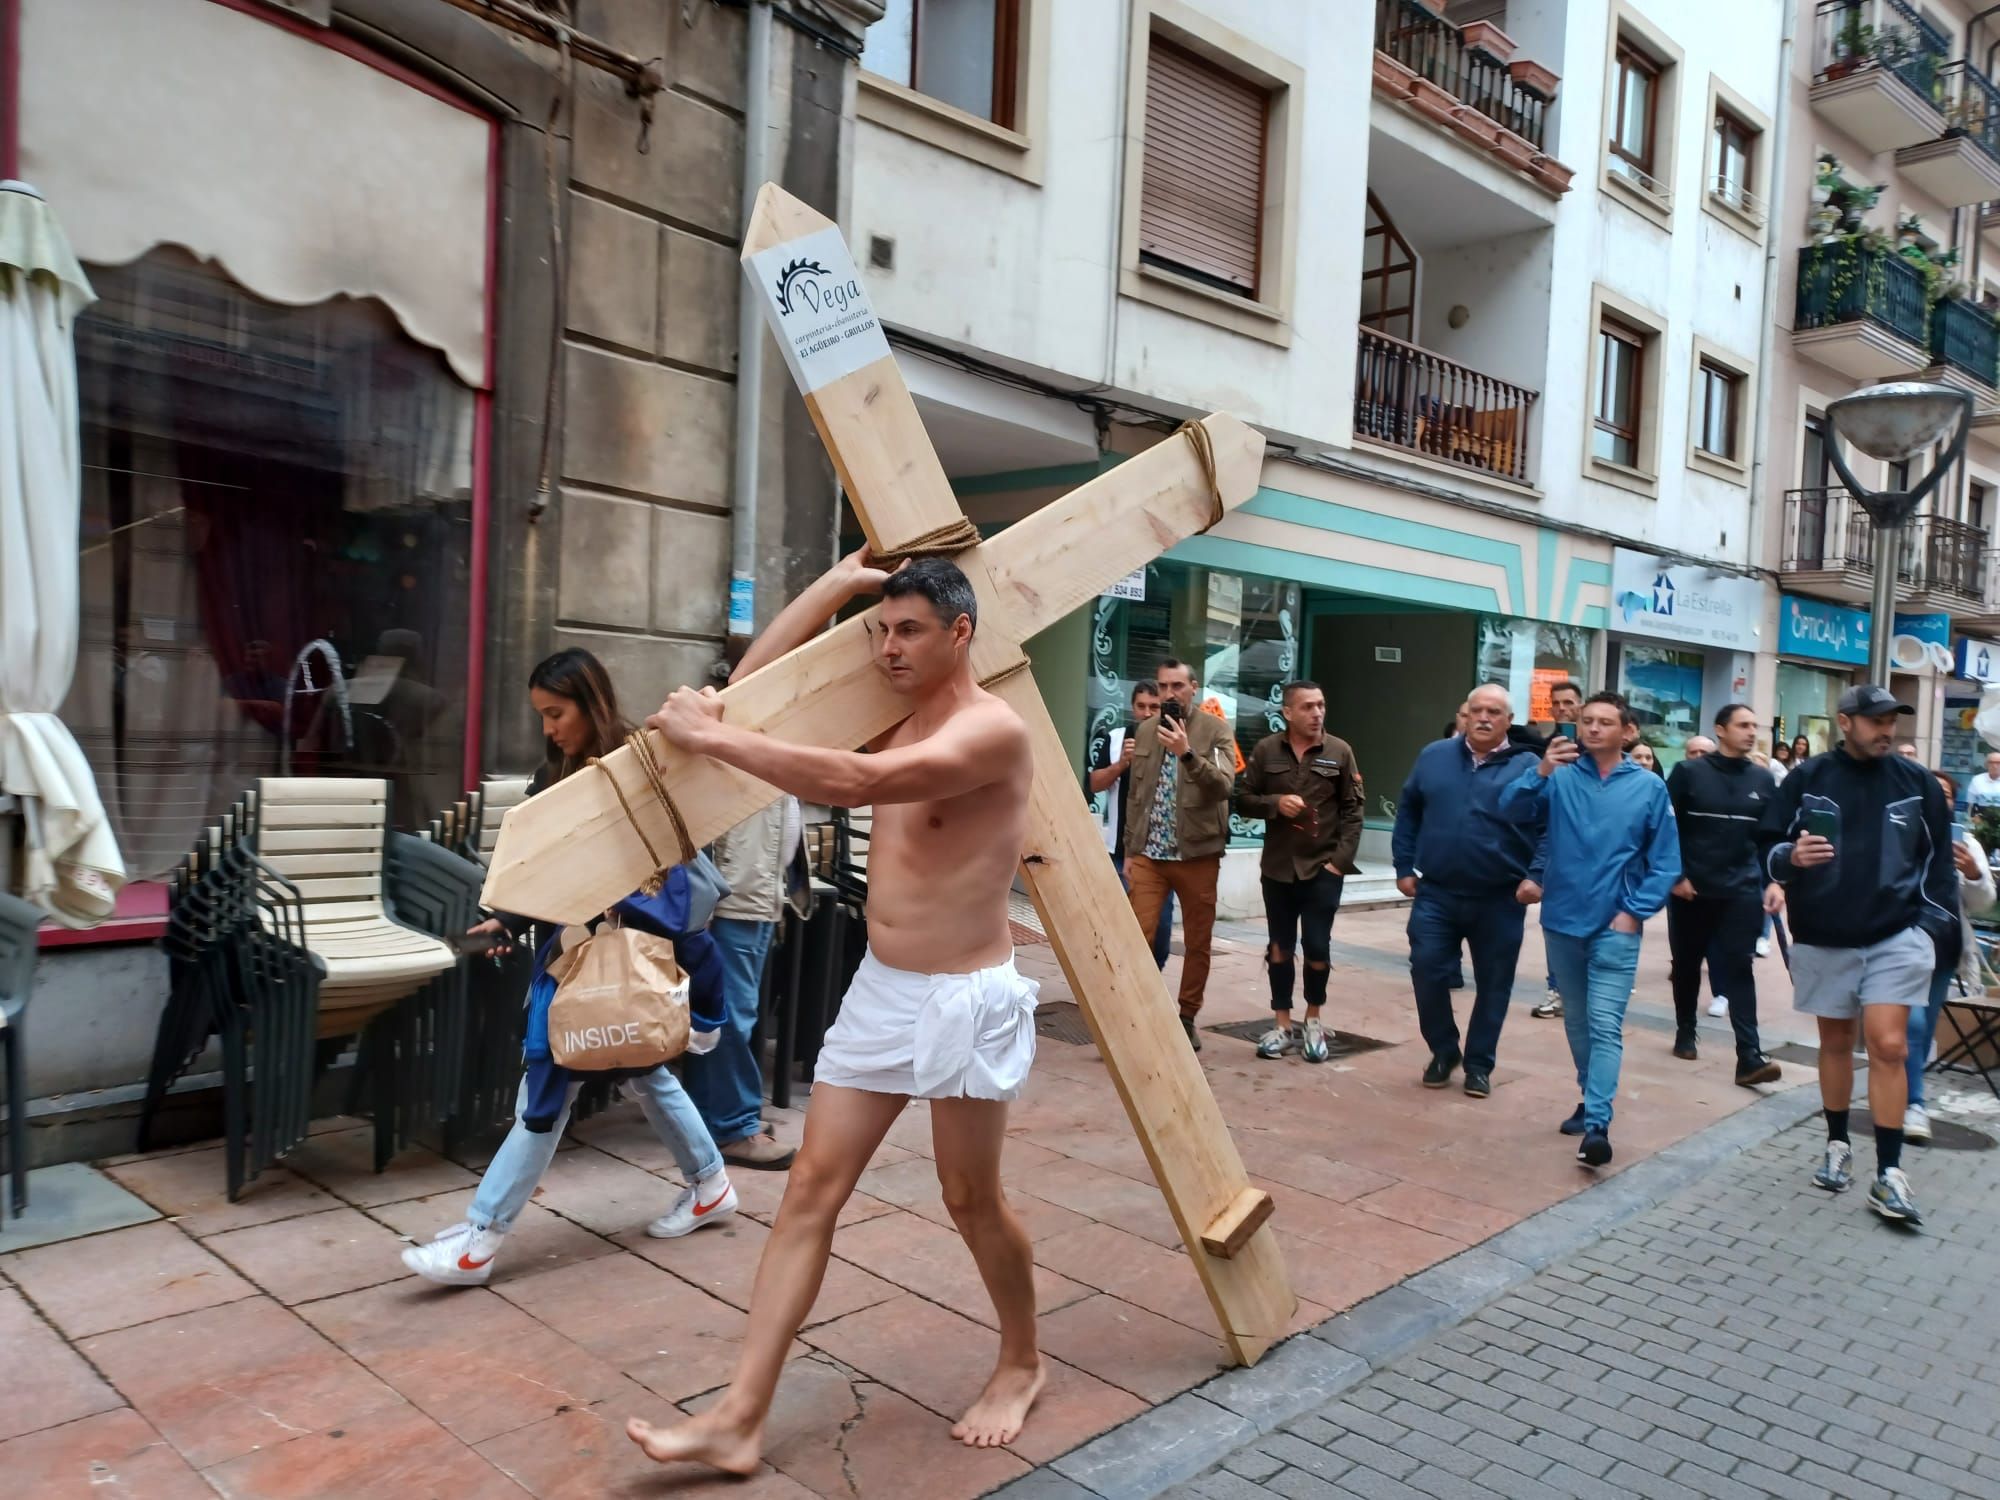 El hostelero "crucificado" de Grado: el "vía crucis" del dueño del Trastevere, en imágenes